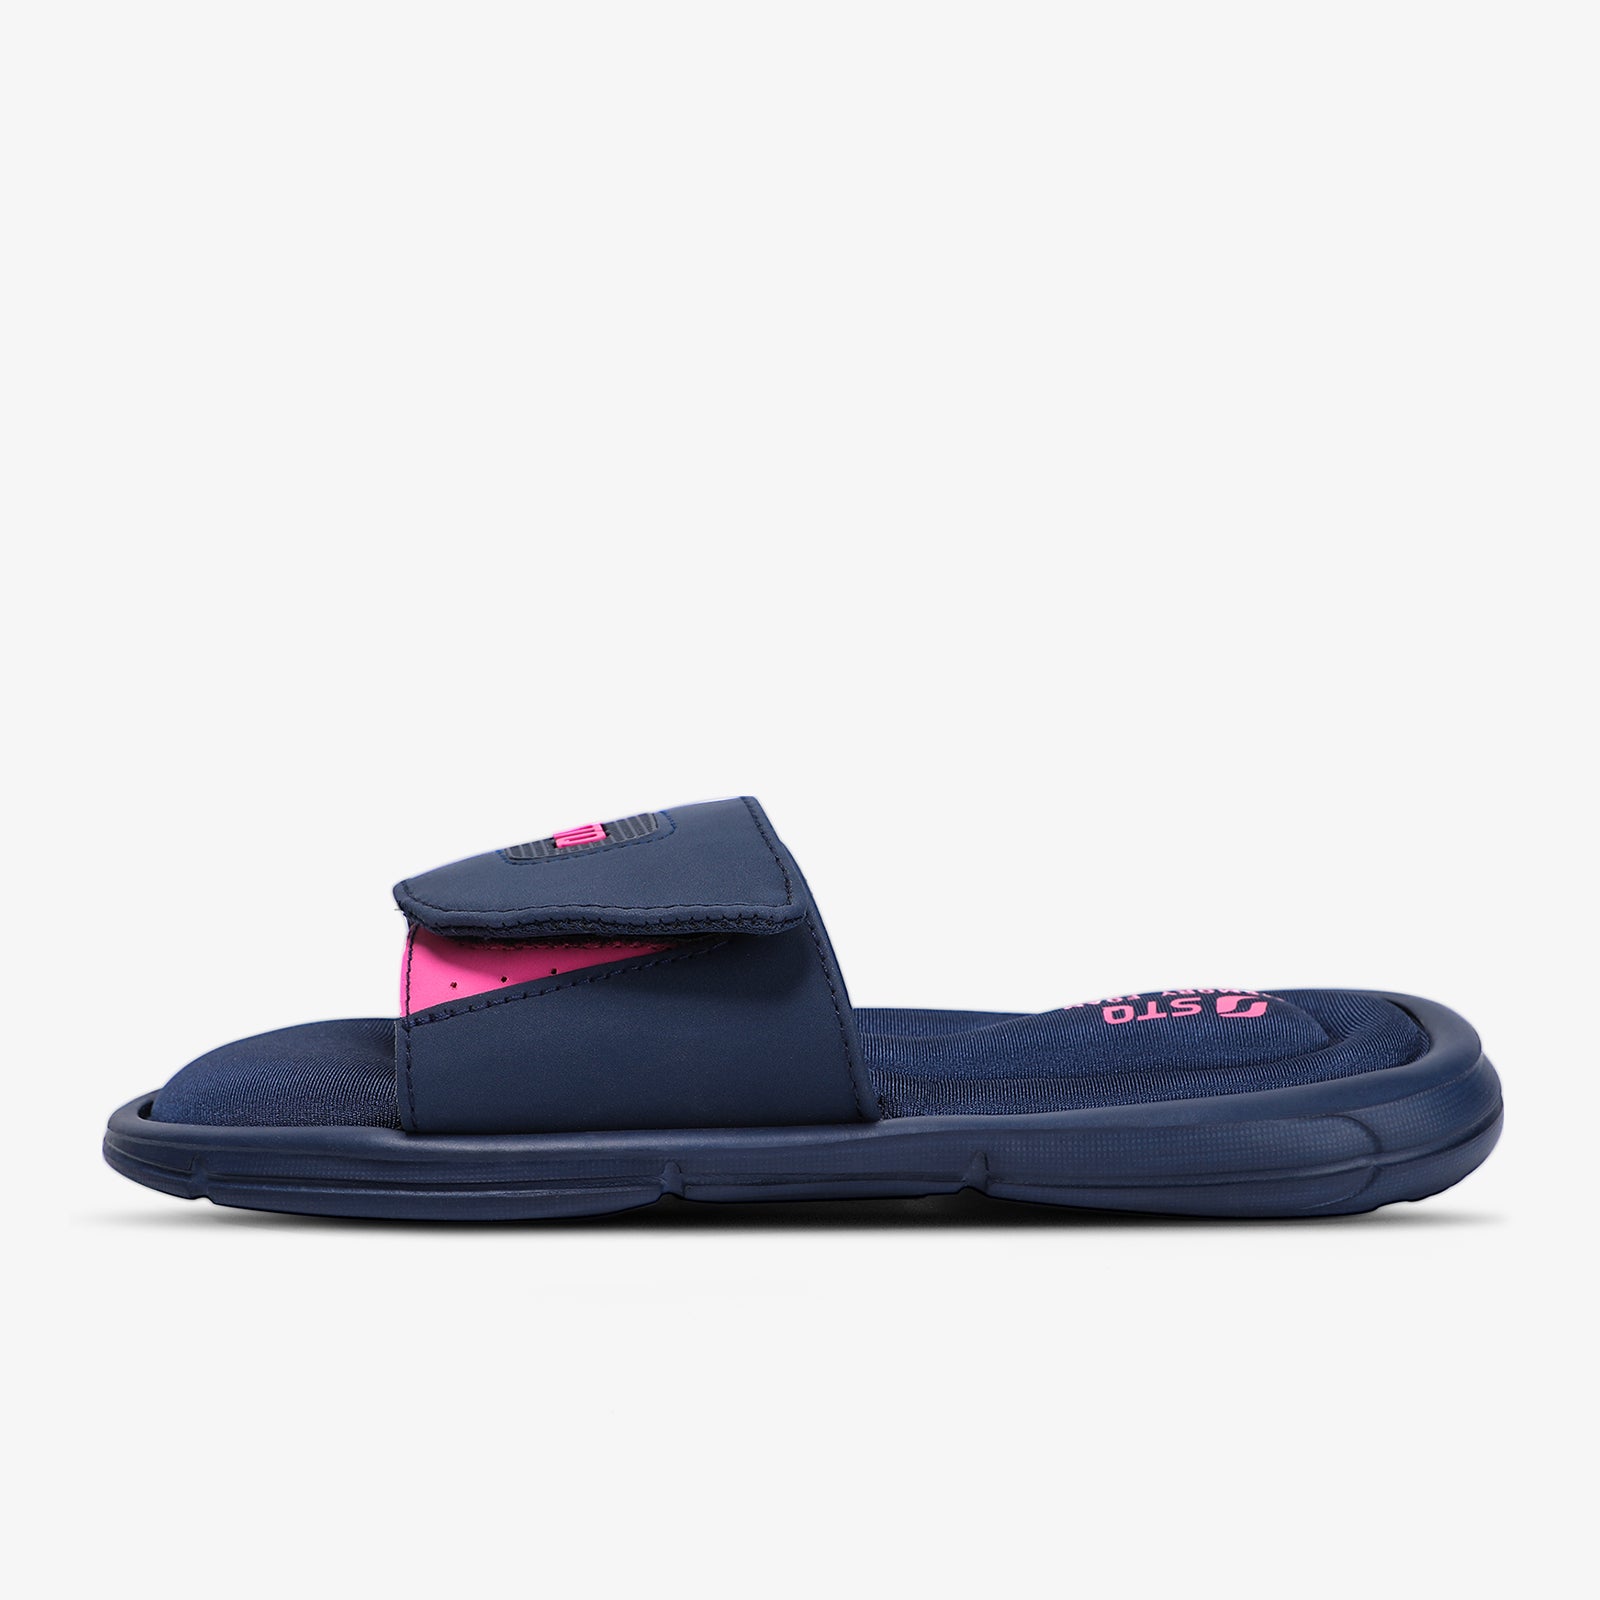 STQ Memory Foam Slides for Women Comfort Adjustable Slide Sandals